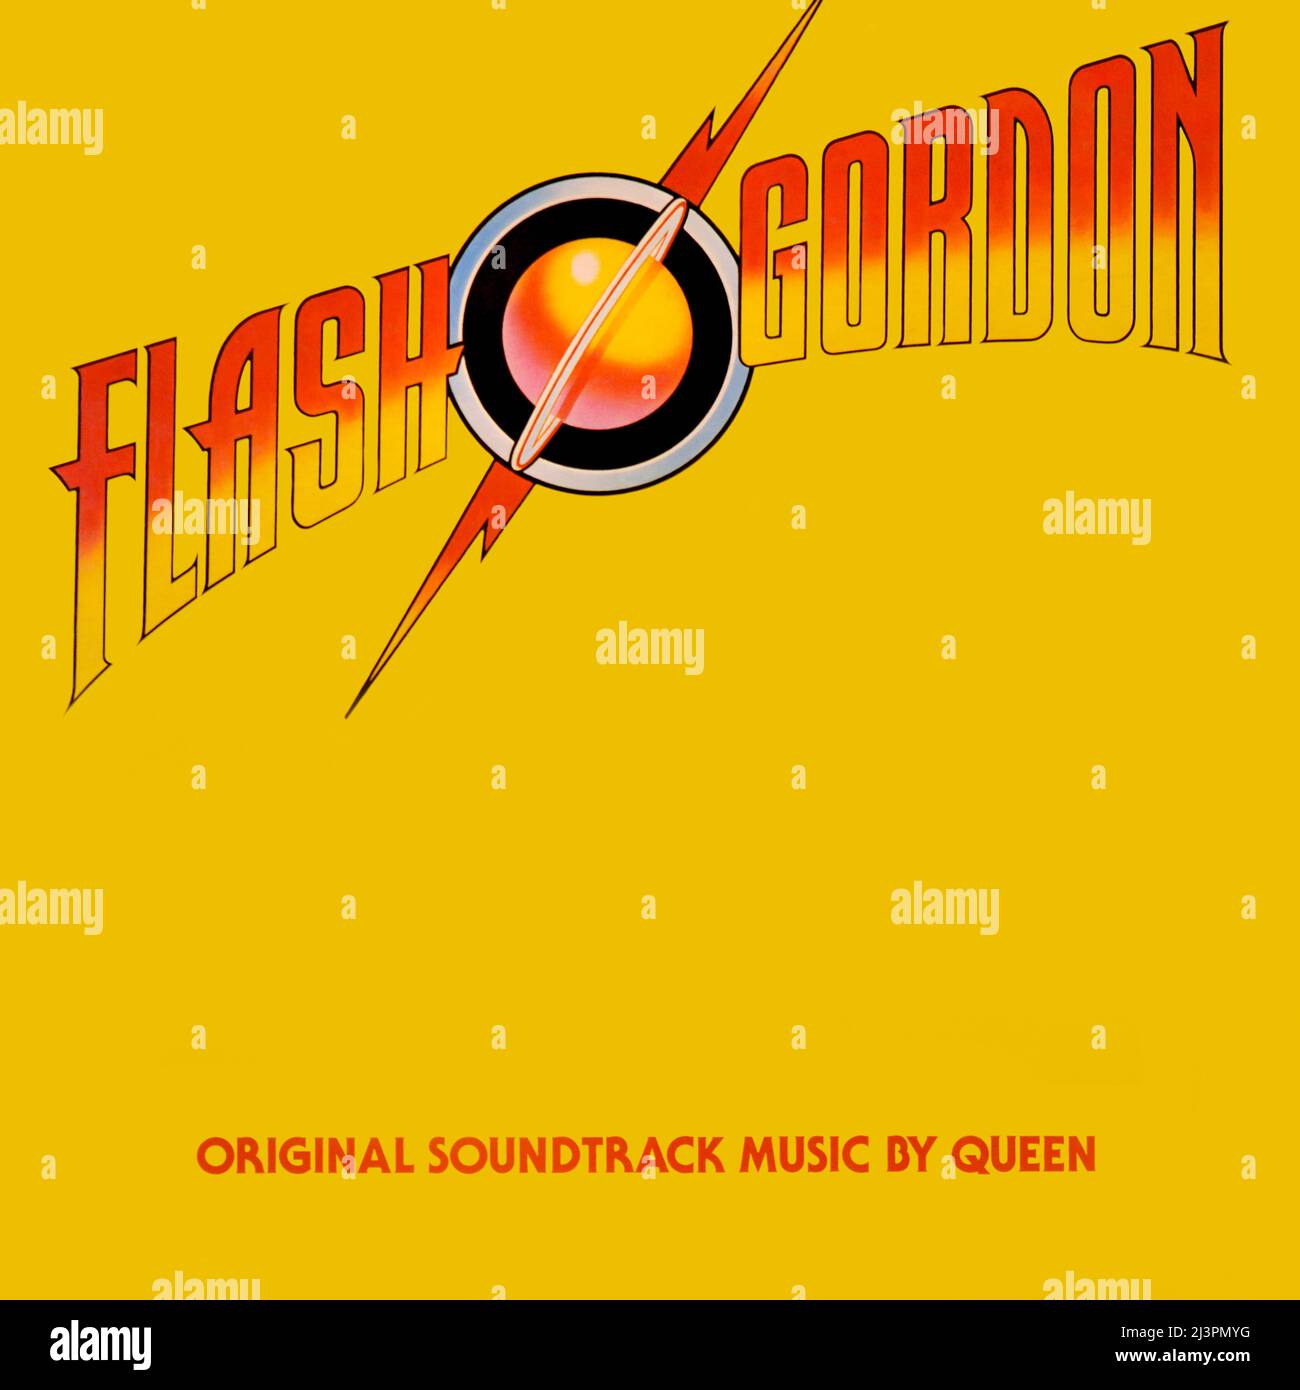 Queen . original vinyl album cover - Flash Gordon (Original Soundtrack Music) - 1980 Stock Photo